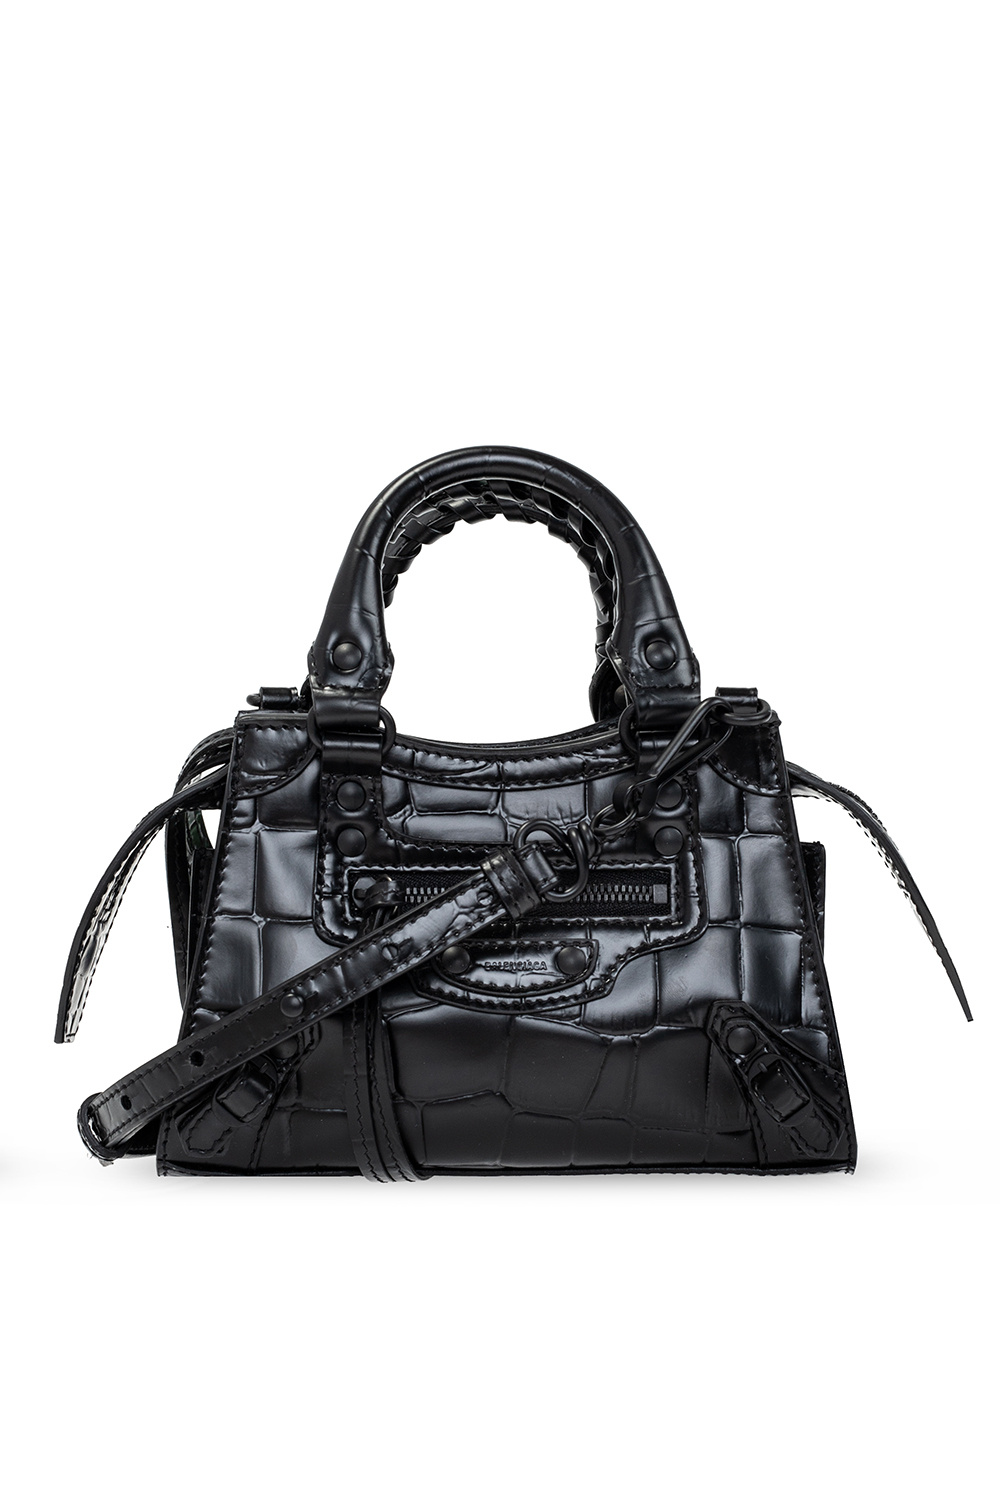 Balenciaga 'Neo Classic Mini’ shoulder bag